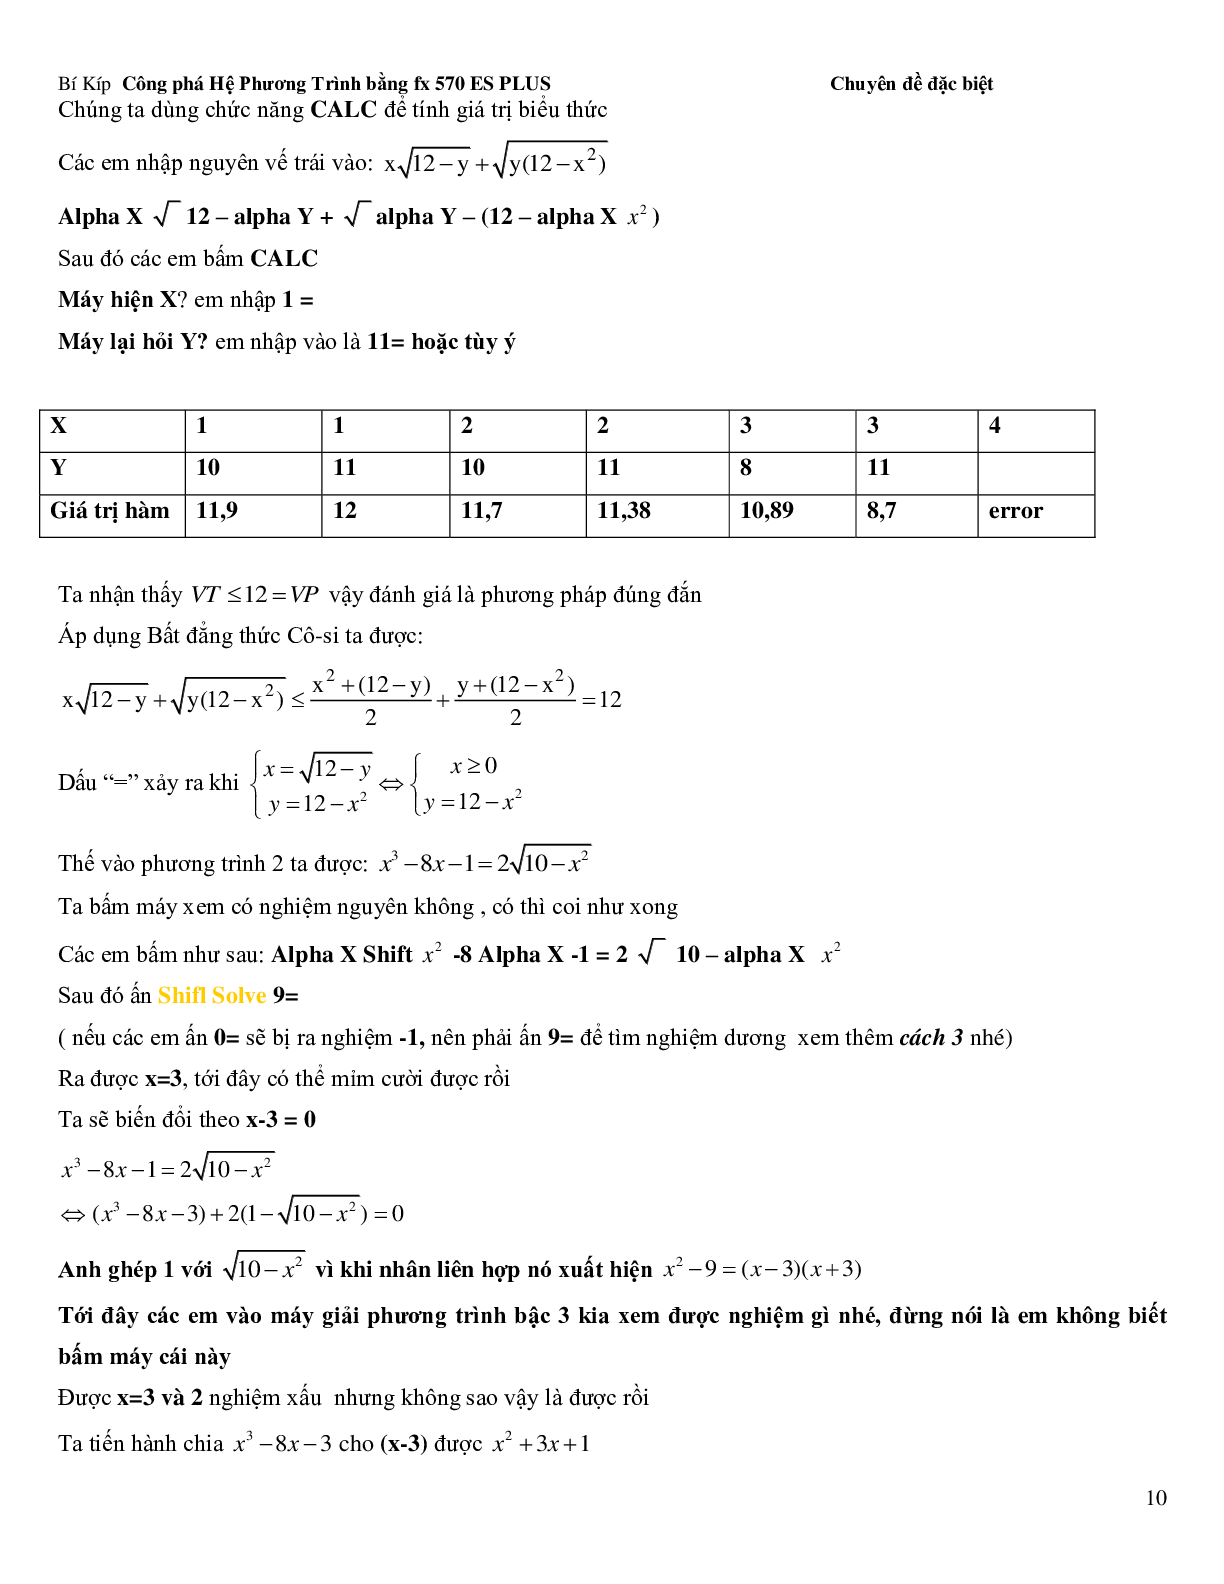 Bí kíp để giải hệ phương trình bằng Casio (trang 10)